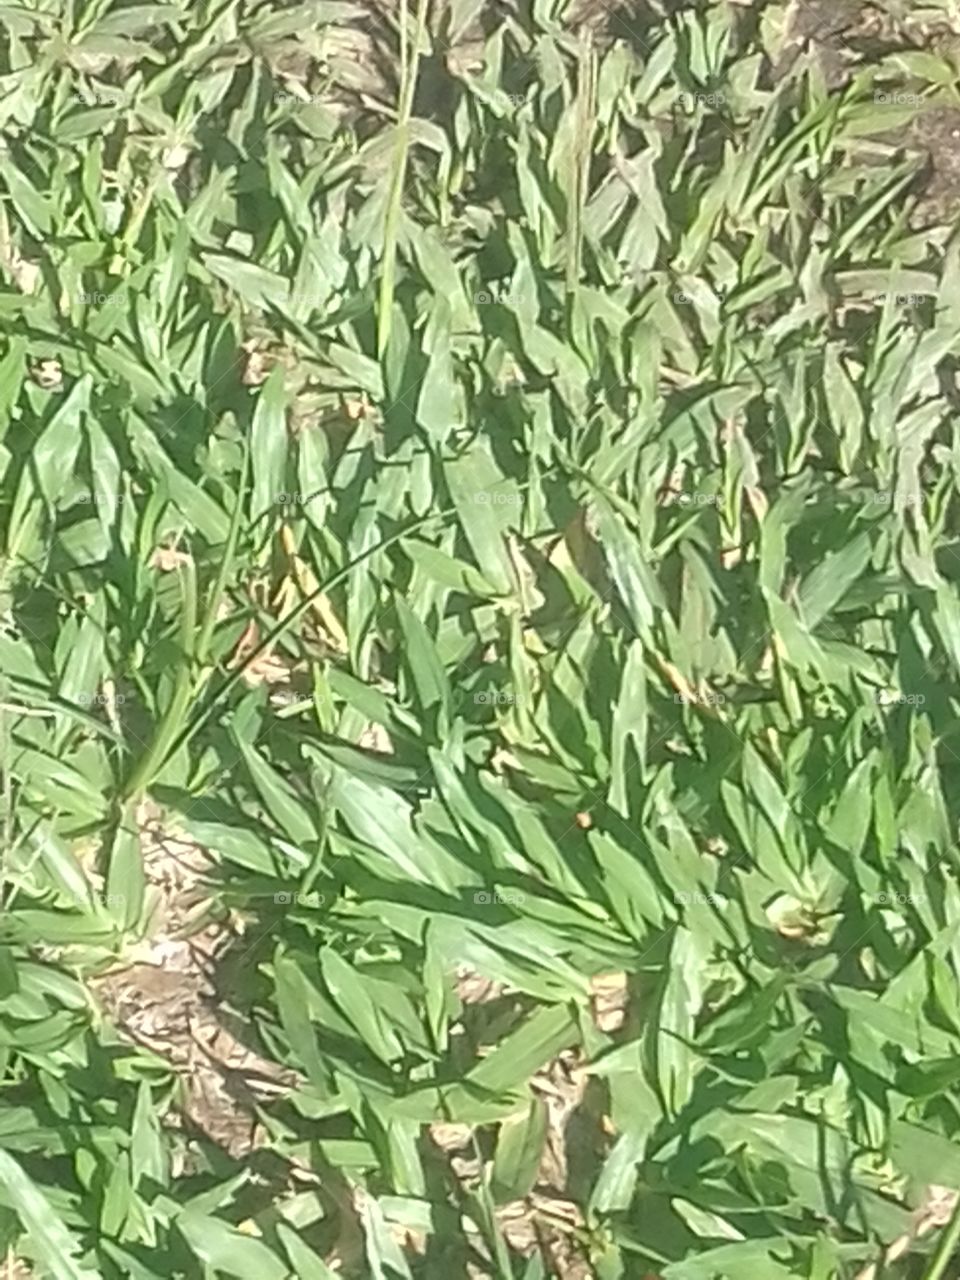 gramadogreen grass